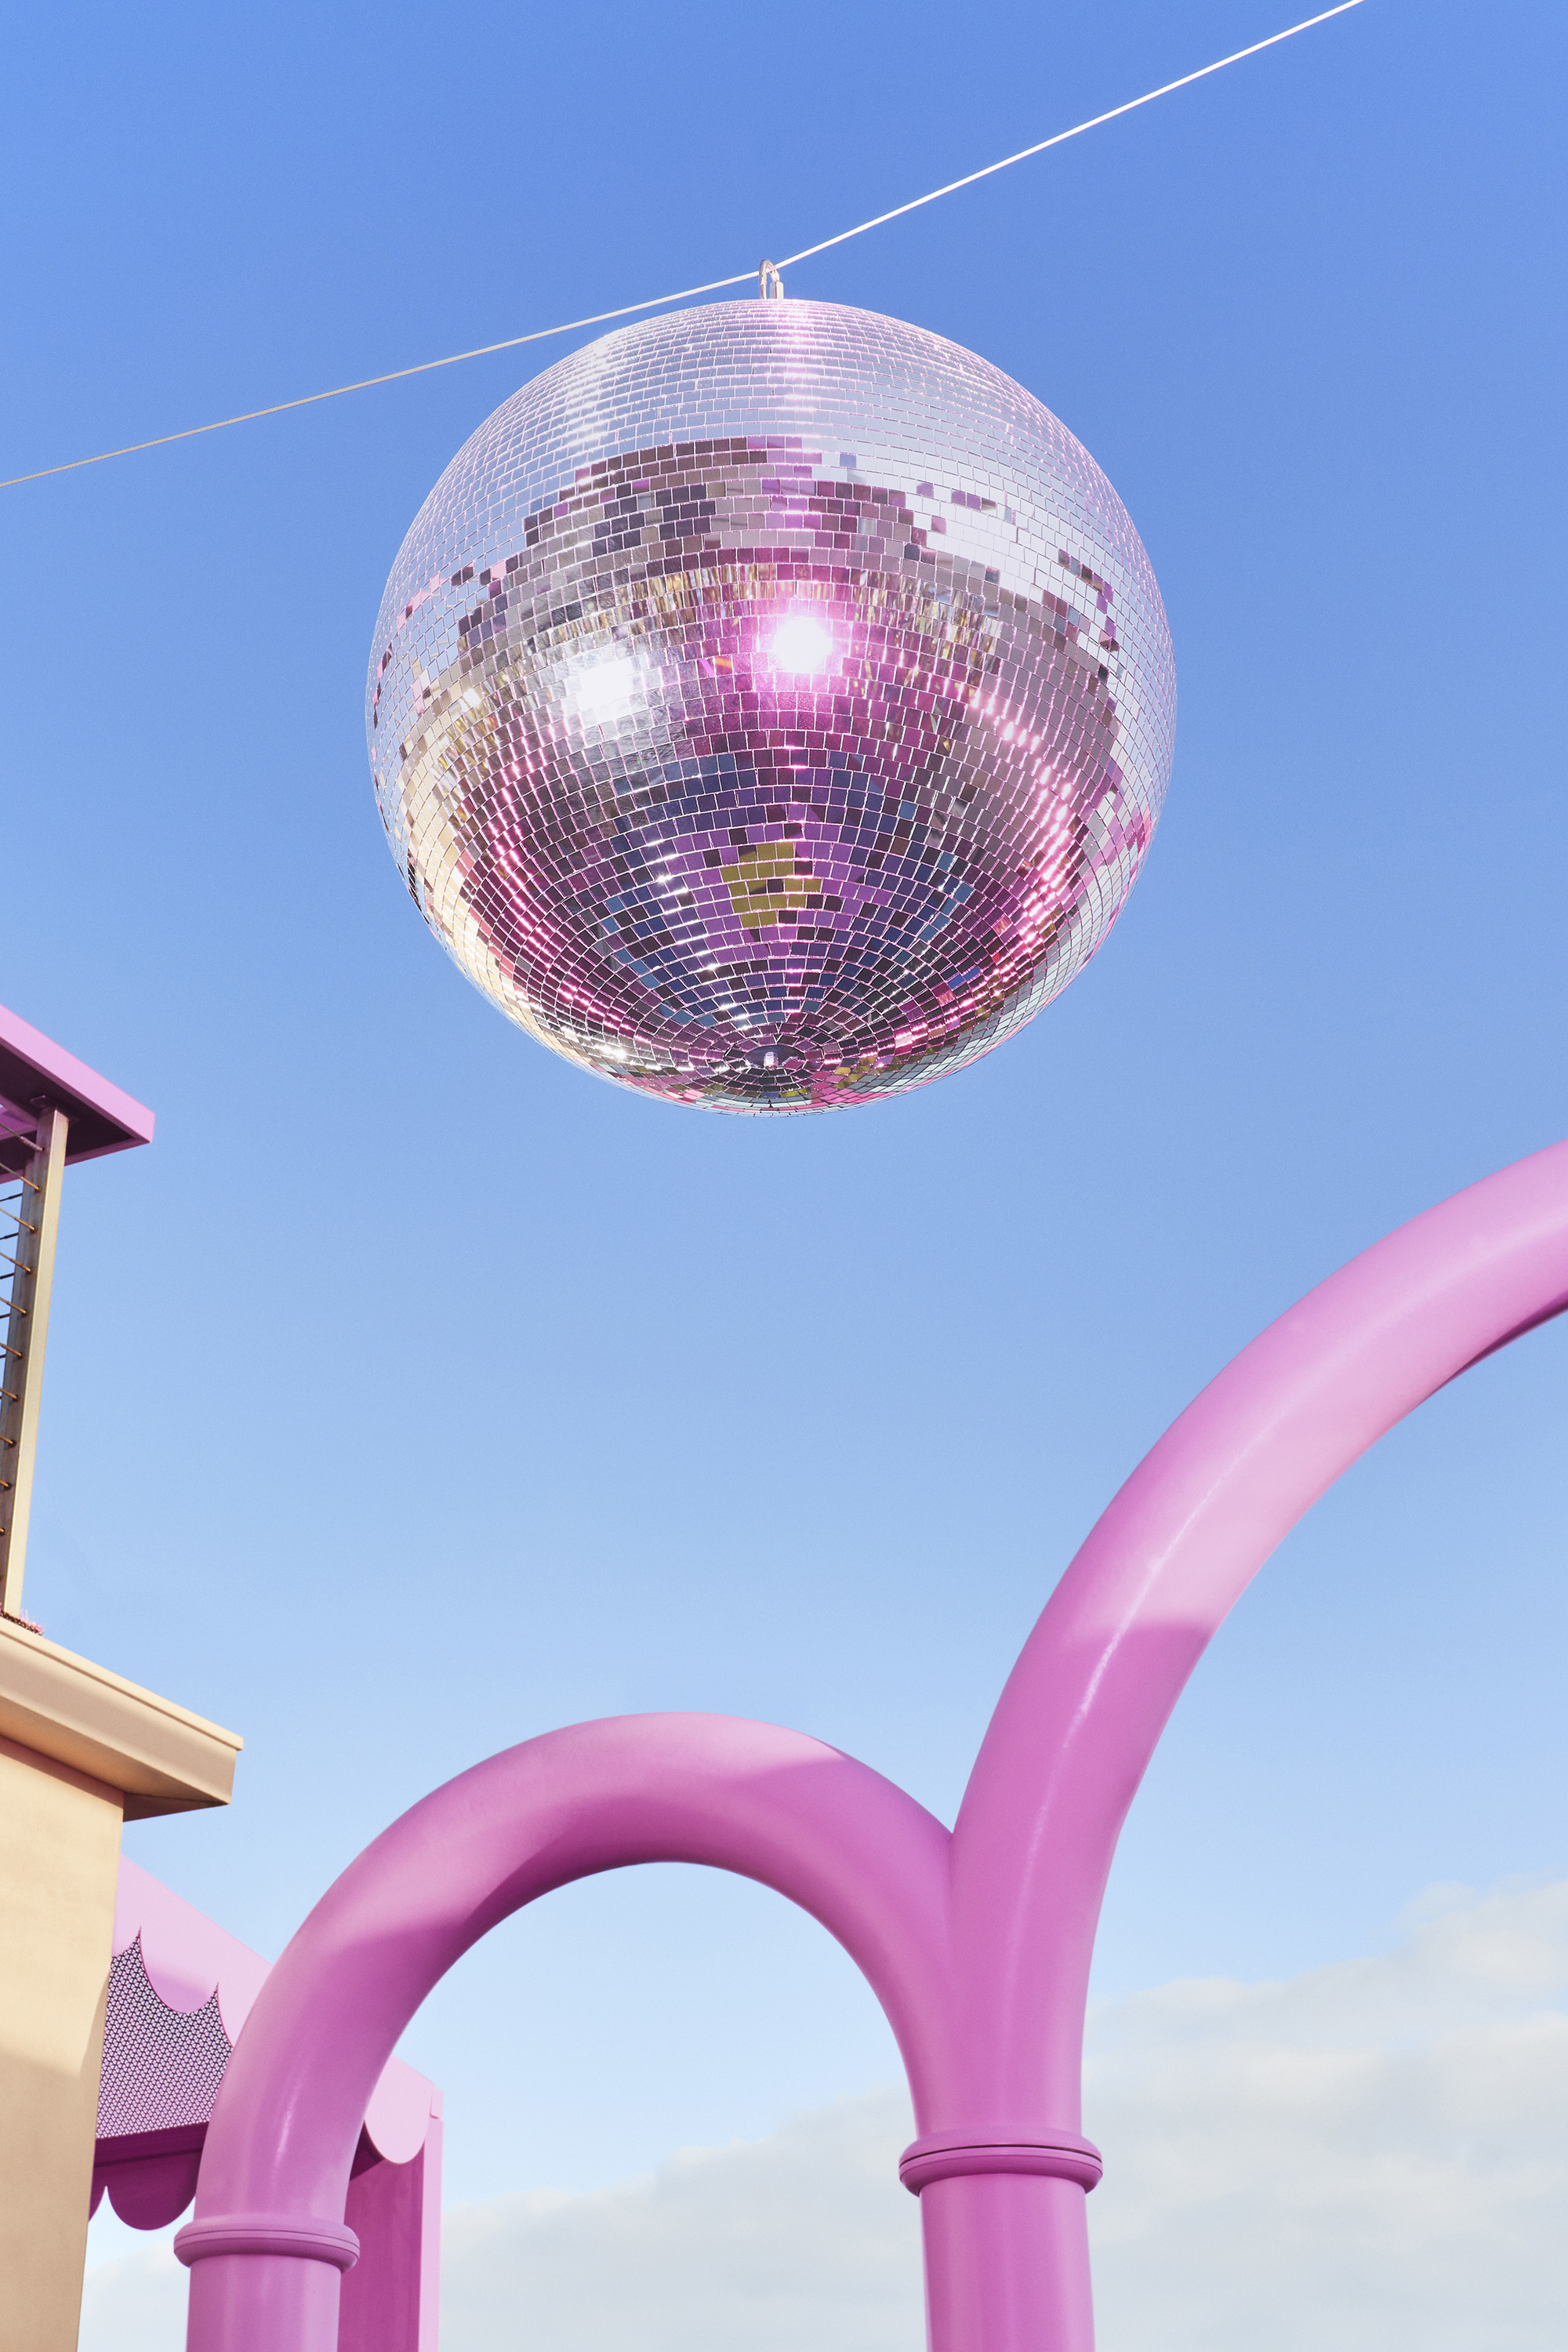 A closeup of a disco ball